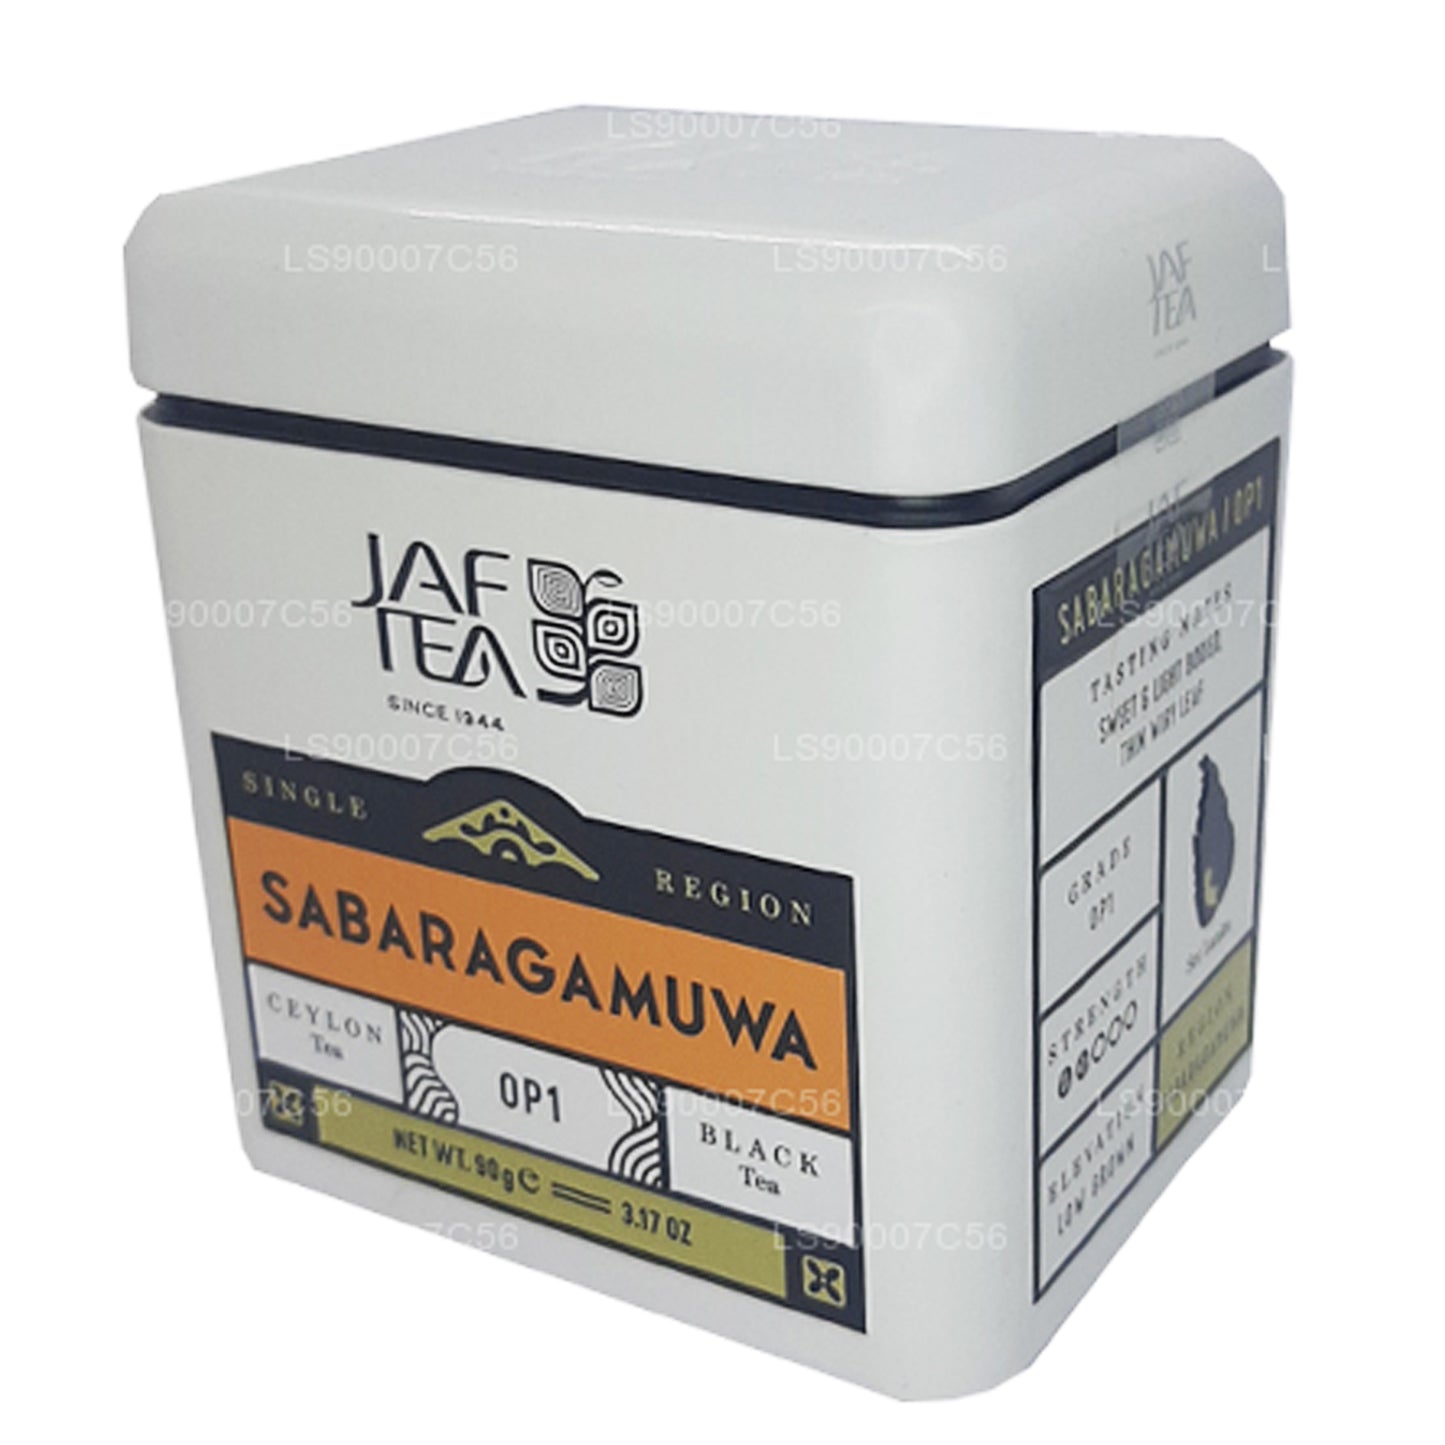 Чай Jaf для одного региона, коллекция Sabaragamuwa OP1 (90 г), олово